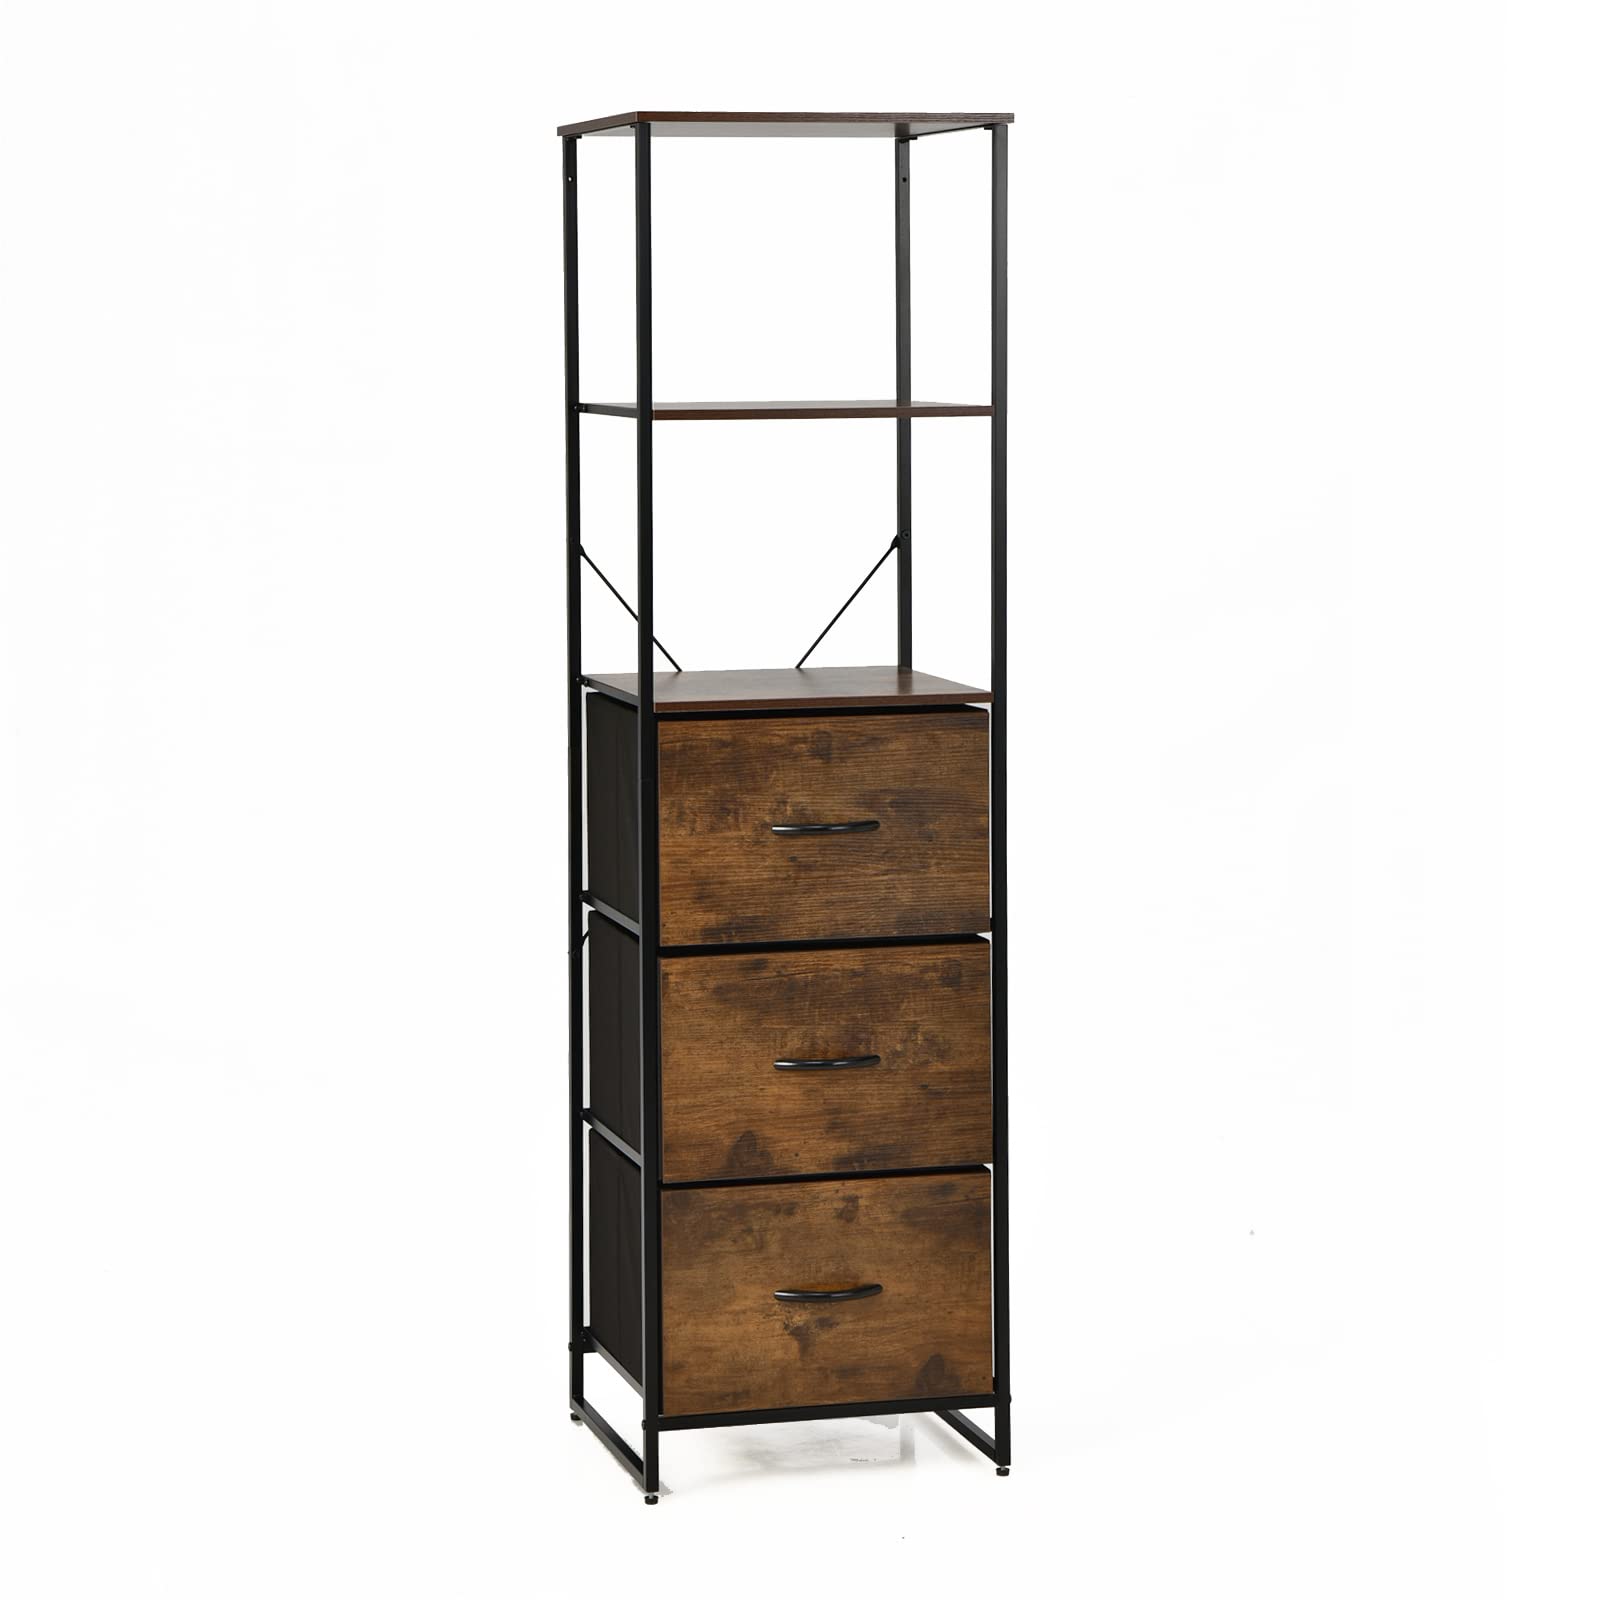 6 Tier Storage Cabinet, 61.5" Tall Storage Rack Storage Bookshelf w/Folding Drawers